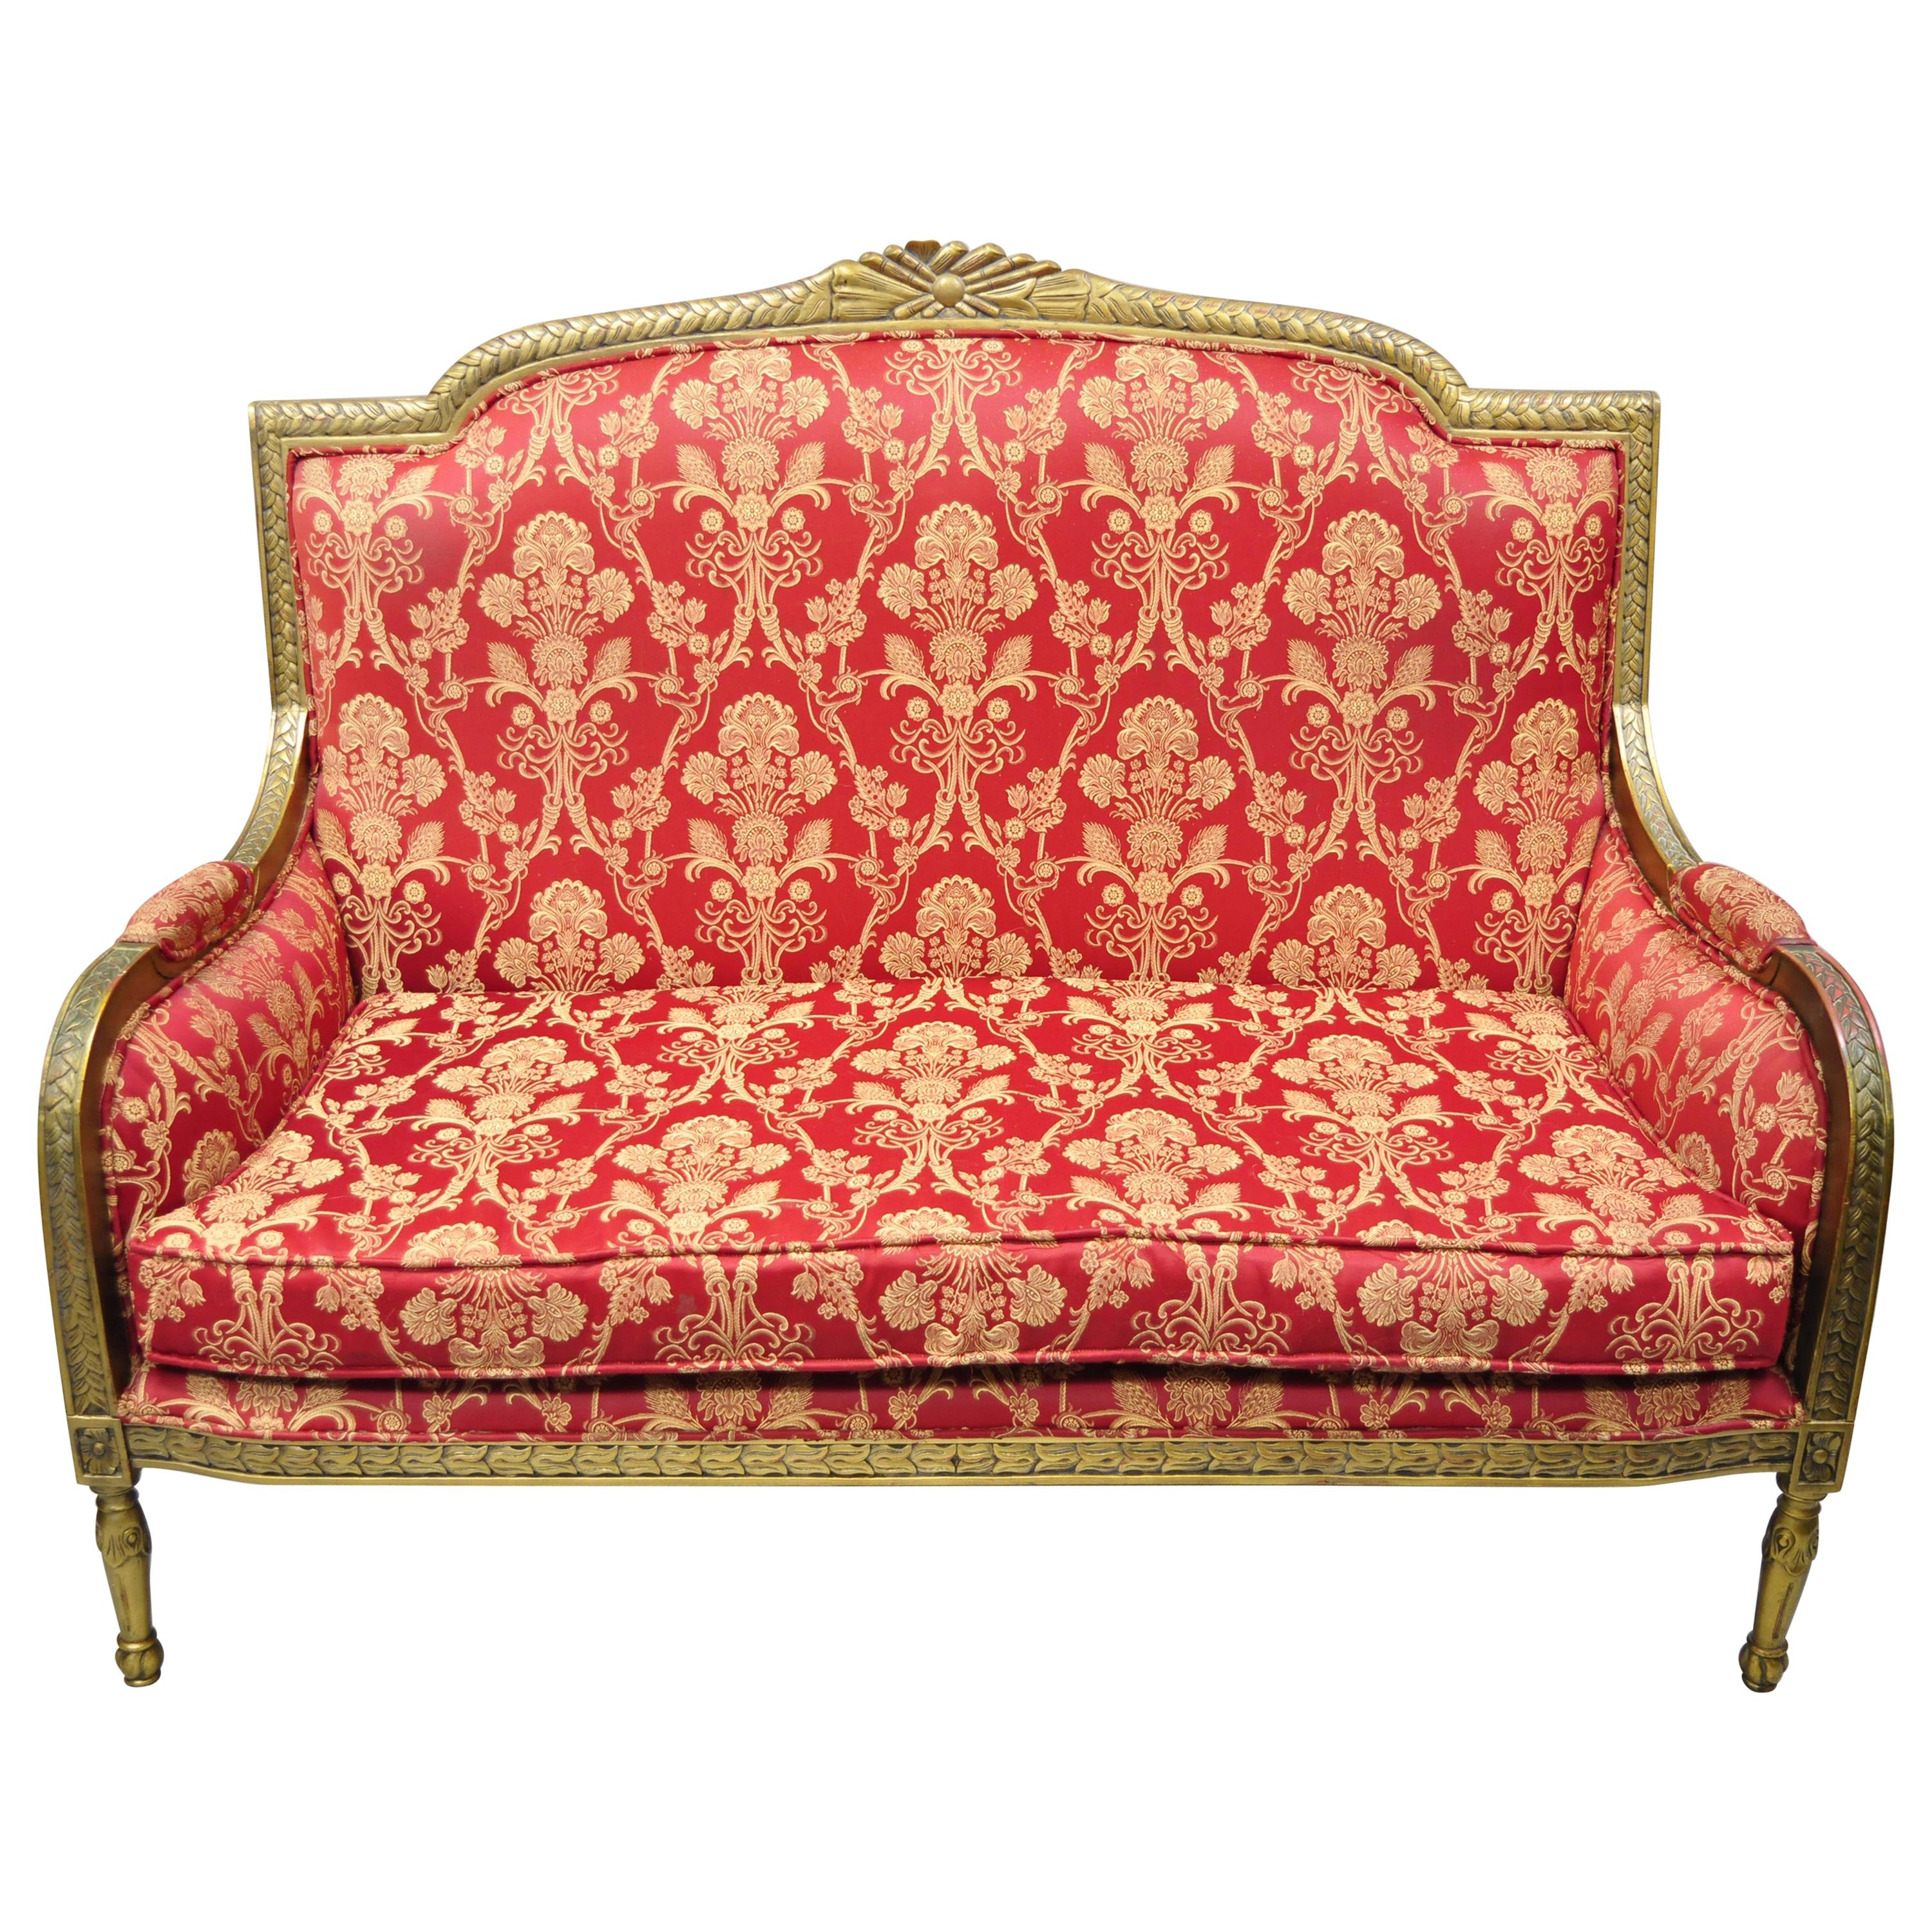 Fauteuil décorateur français de canapé settee de style Louis XVI rouge doré tapissé, chaise Loveseat